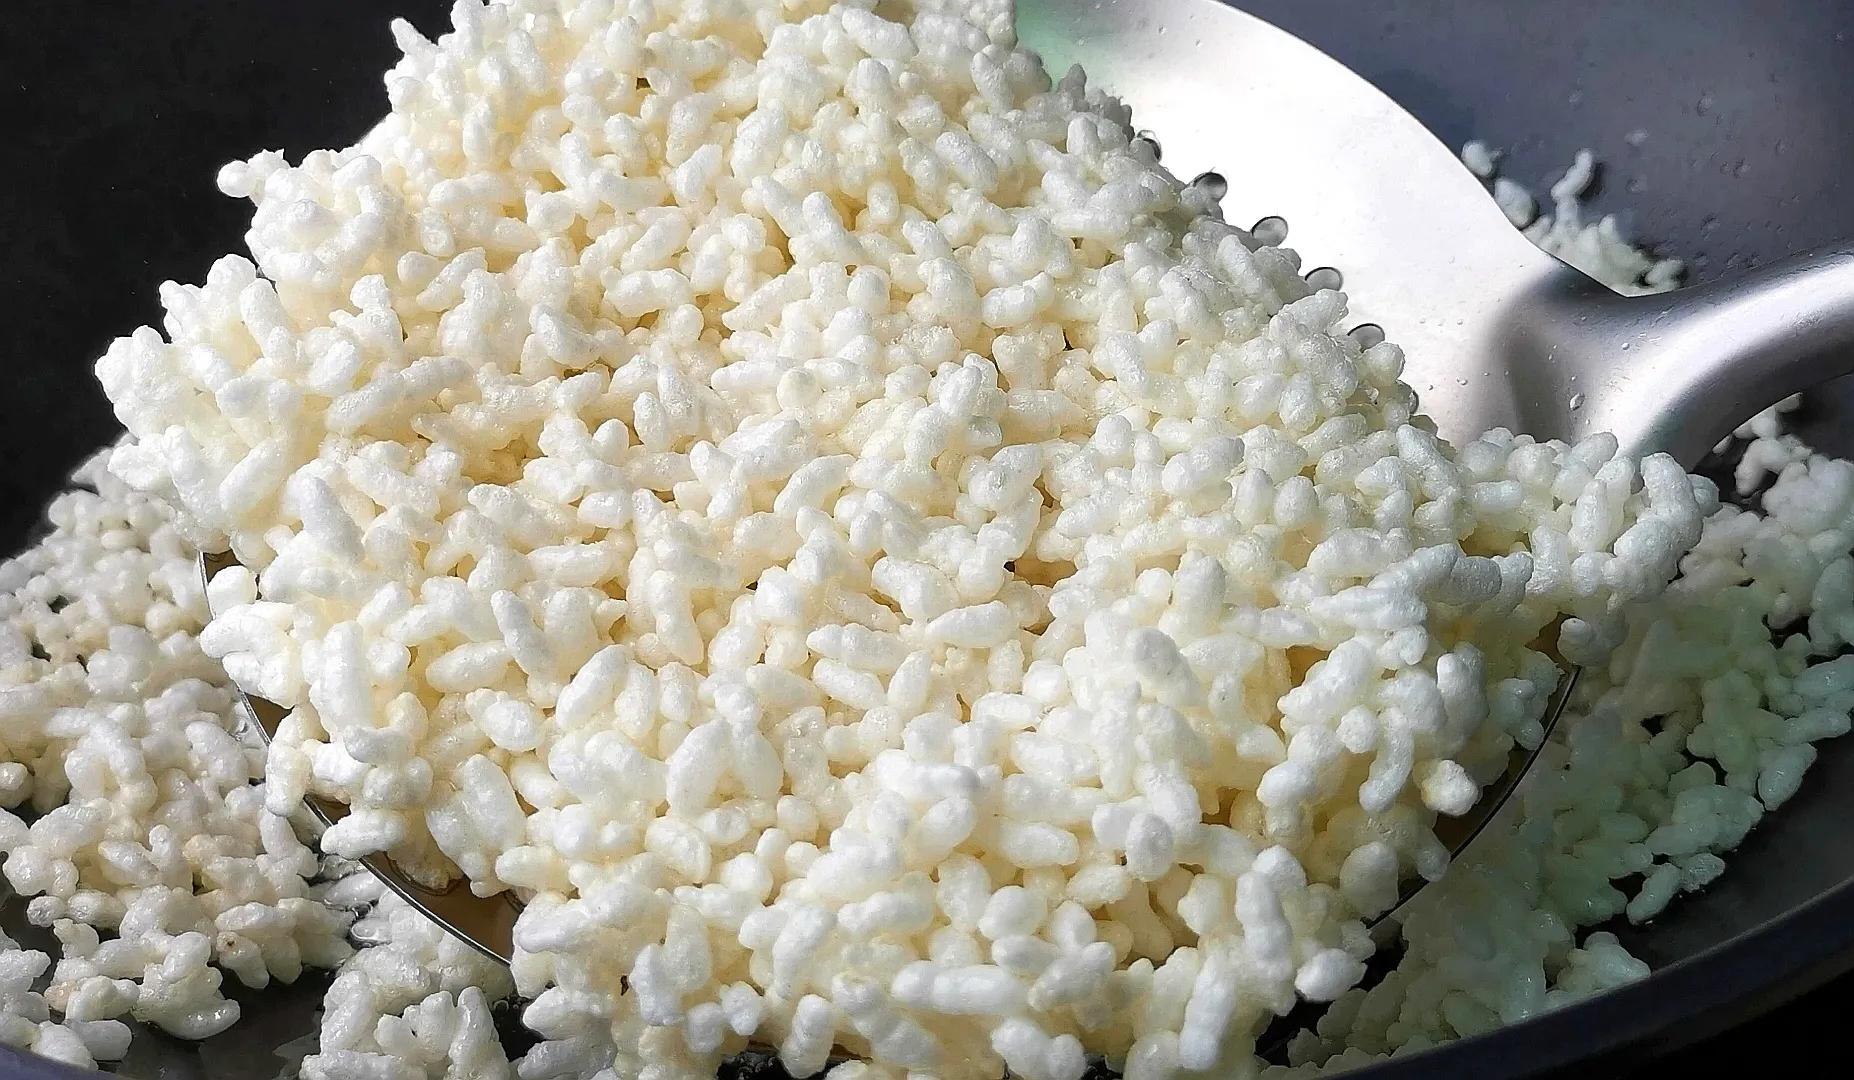 把大米倒进油锅里个个爆开花,简单4步,轻松做成福建的米花糖